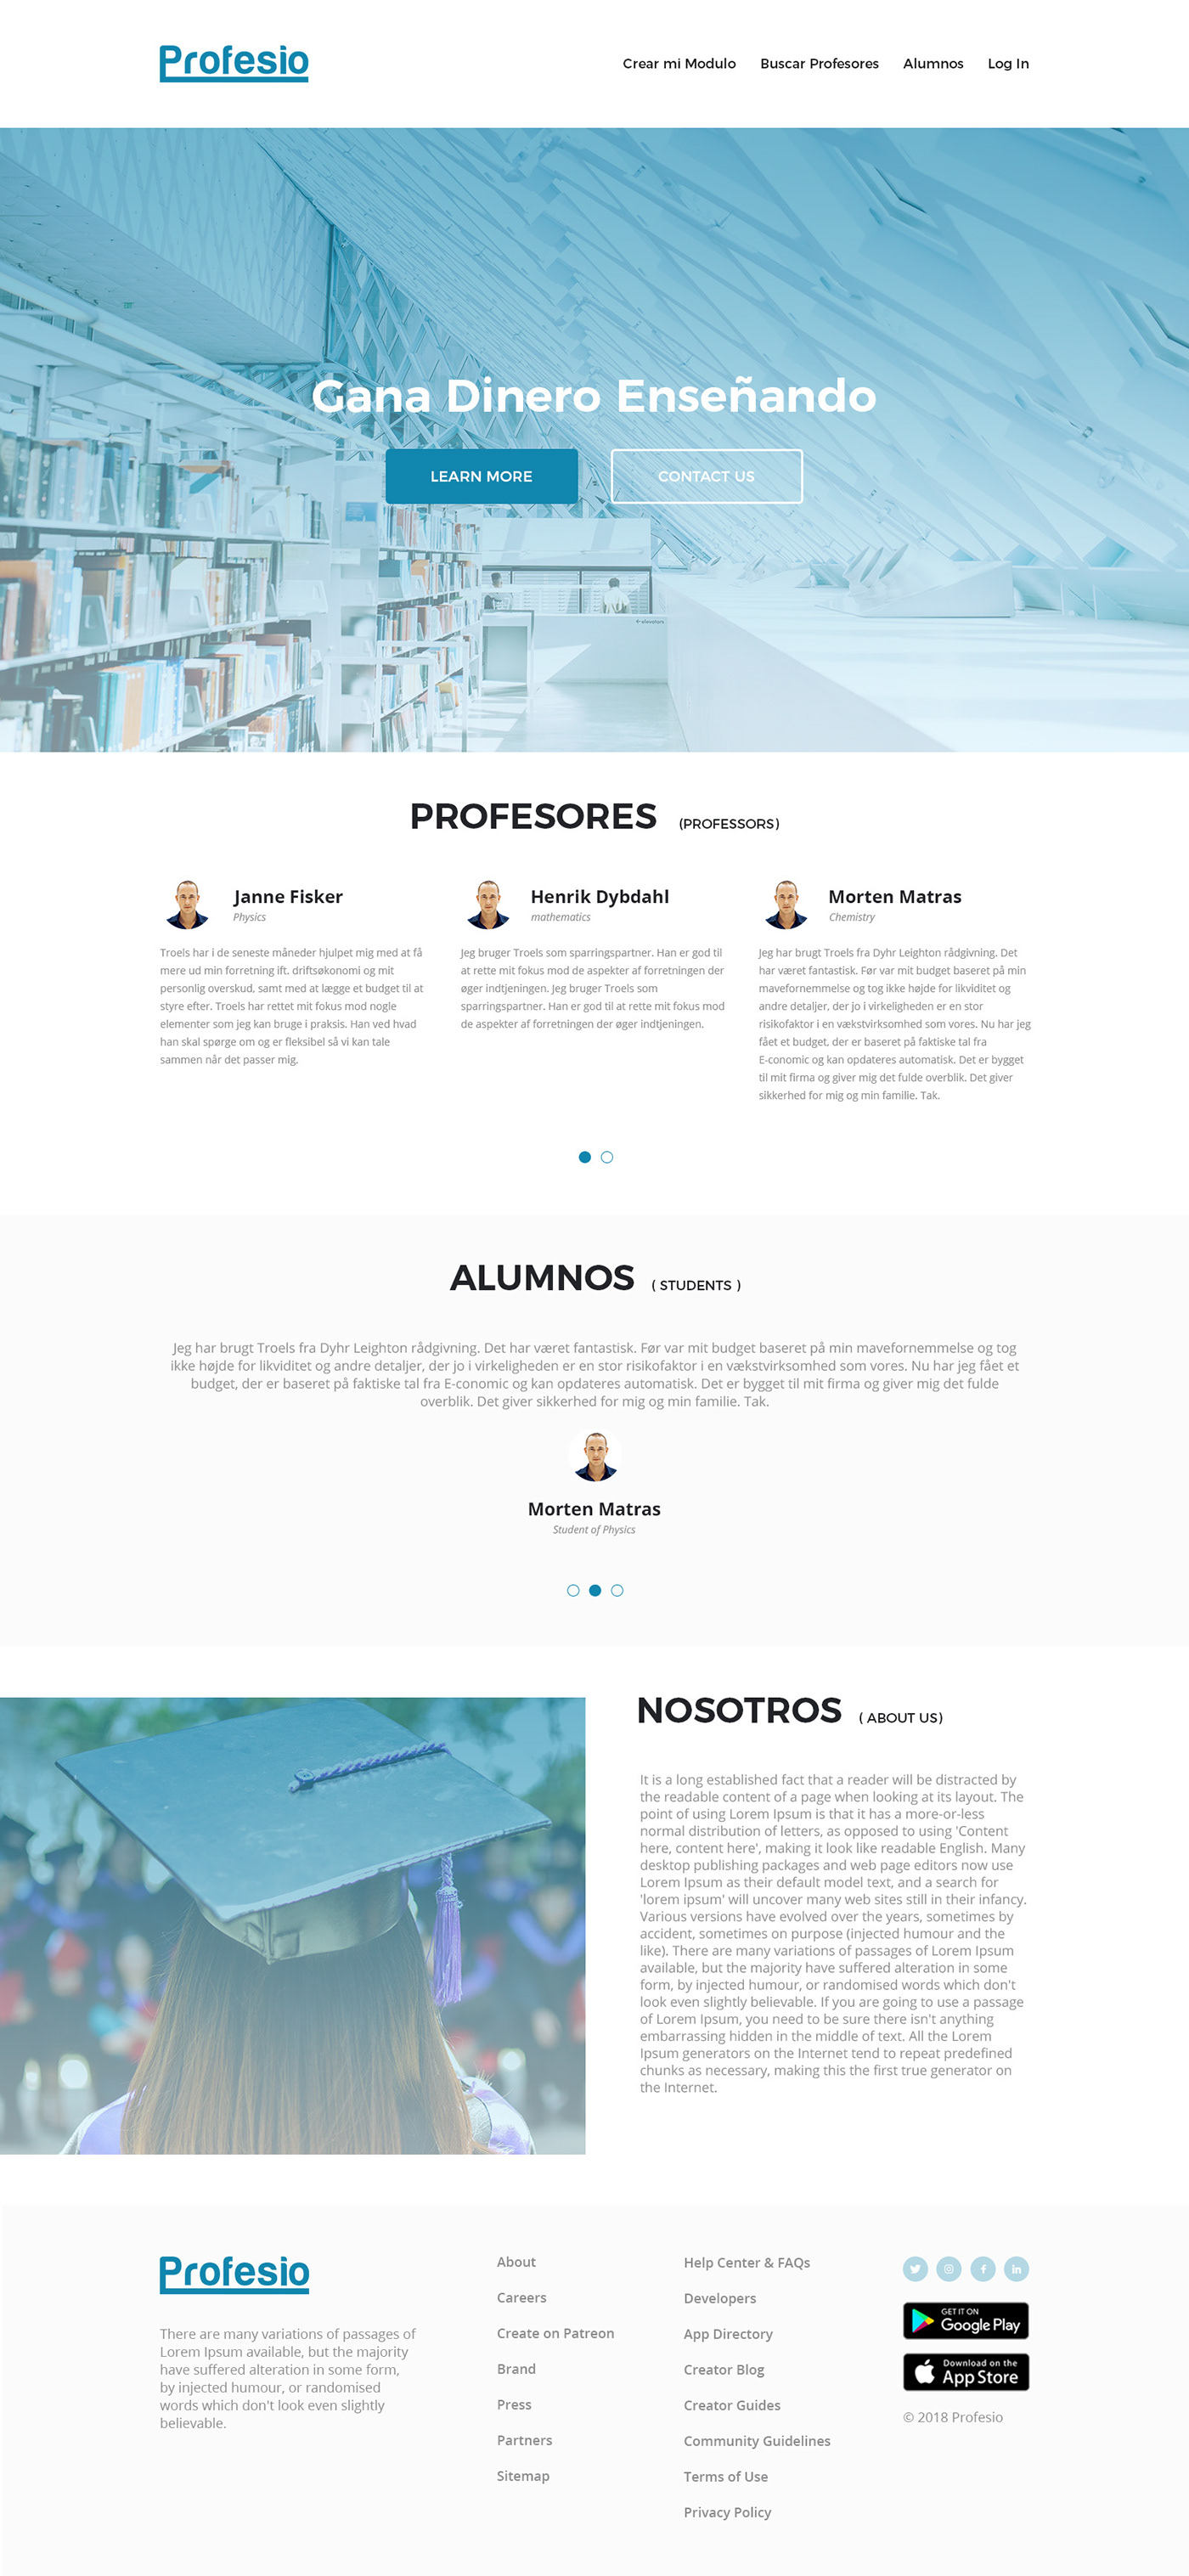 UI ui design user interface design landing page design graphic design  homepage design redesign Creative Design uiux